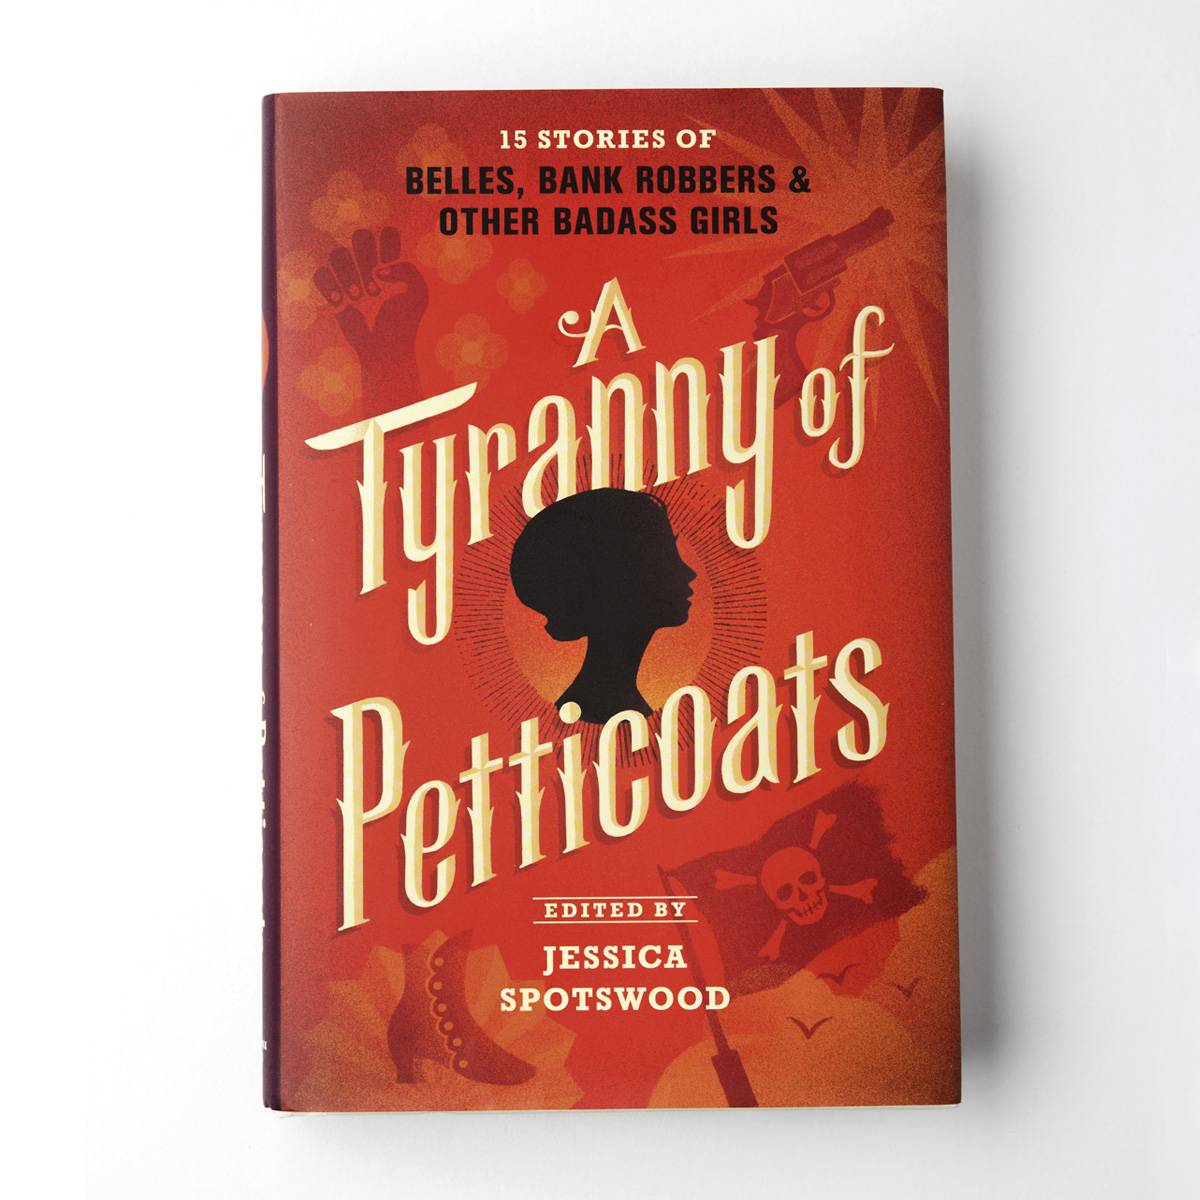 Tyranny of Petticoats